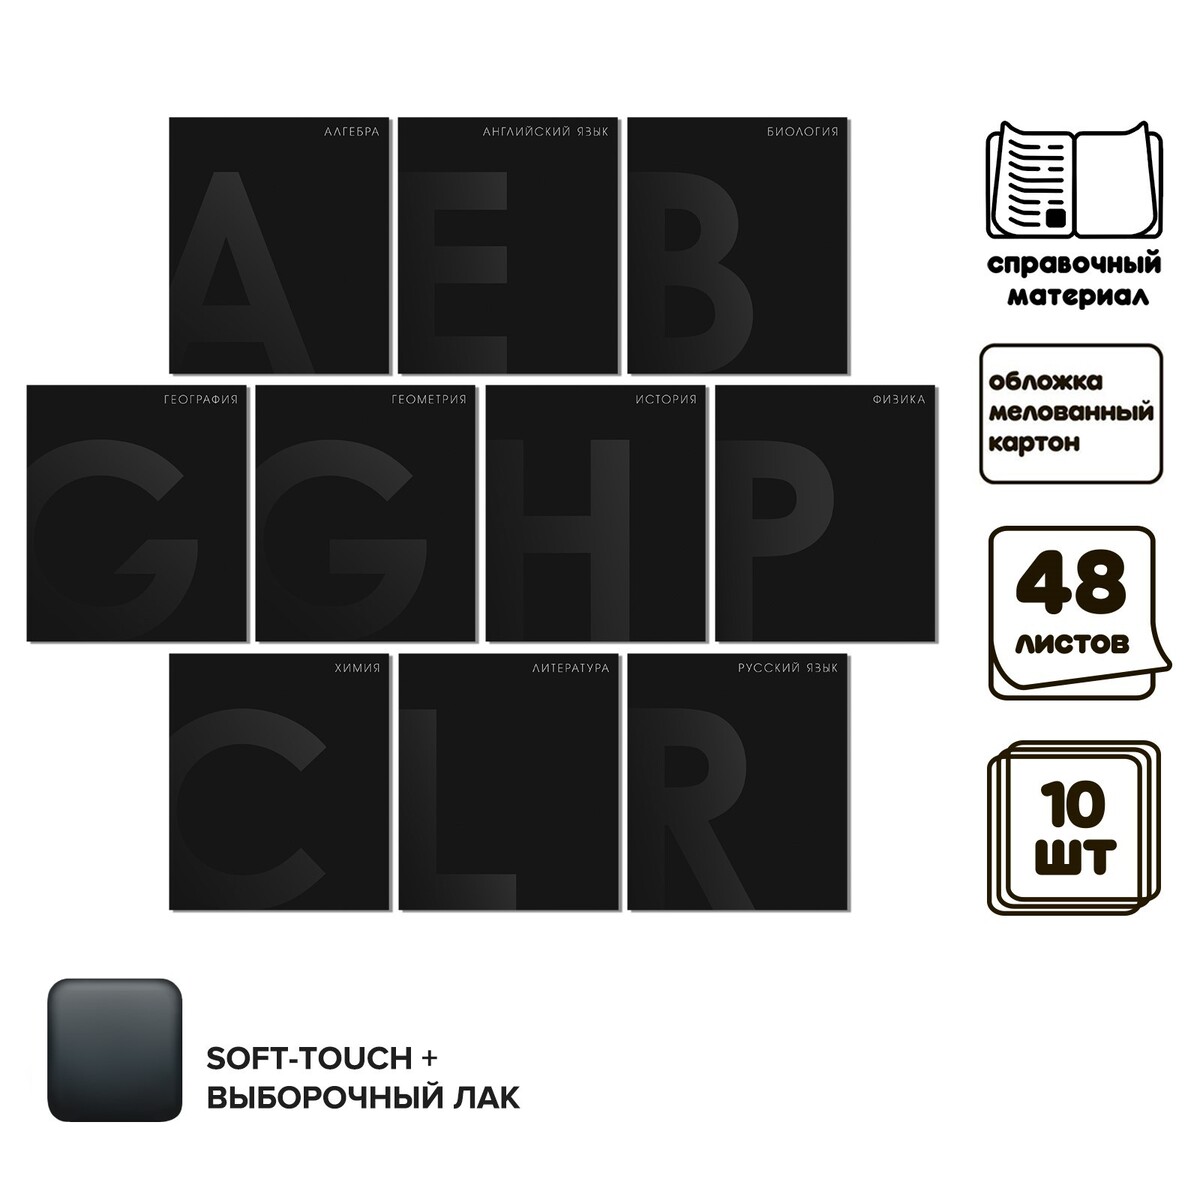 Комплект предметных тетрадей 48 листов 10 предметов комплект тетрадей из 5 шт 48 листов клетка стильные узоры обложка мелованный картон блок офсет